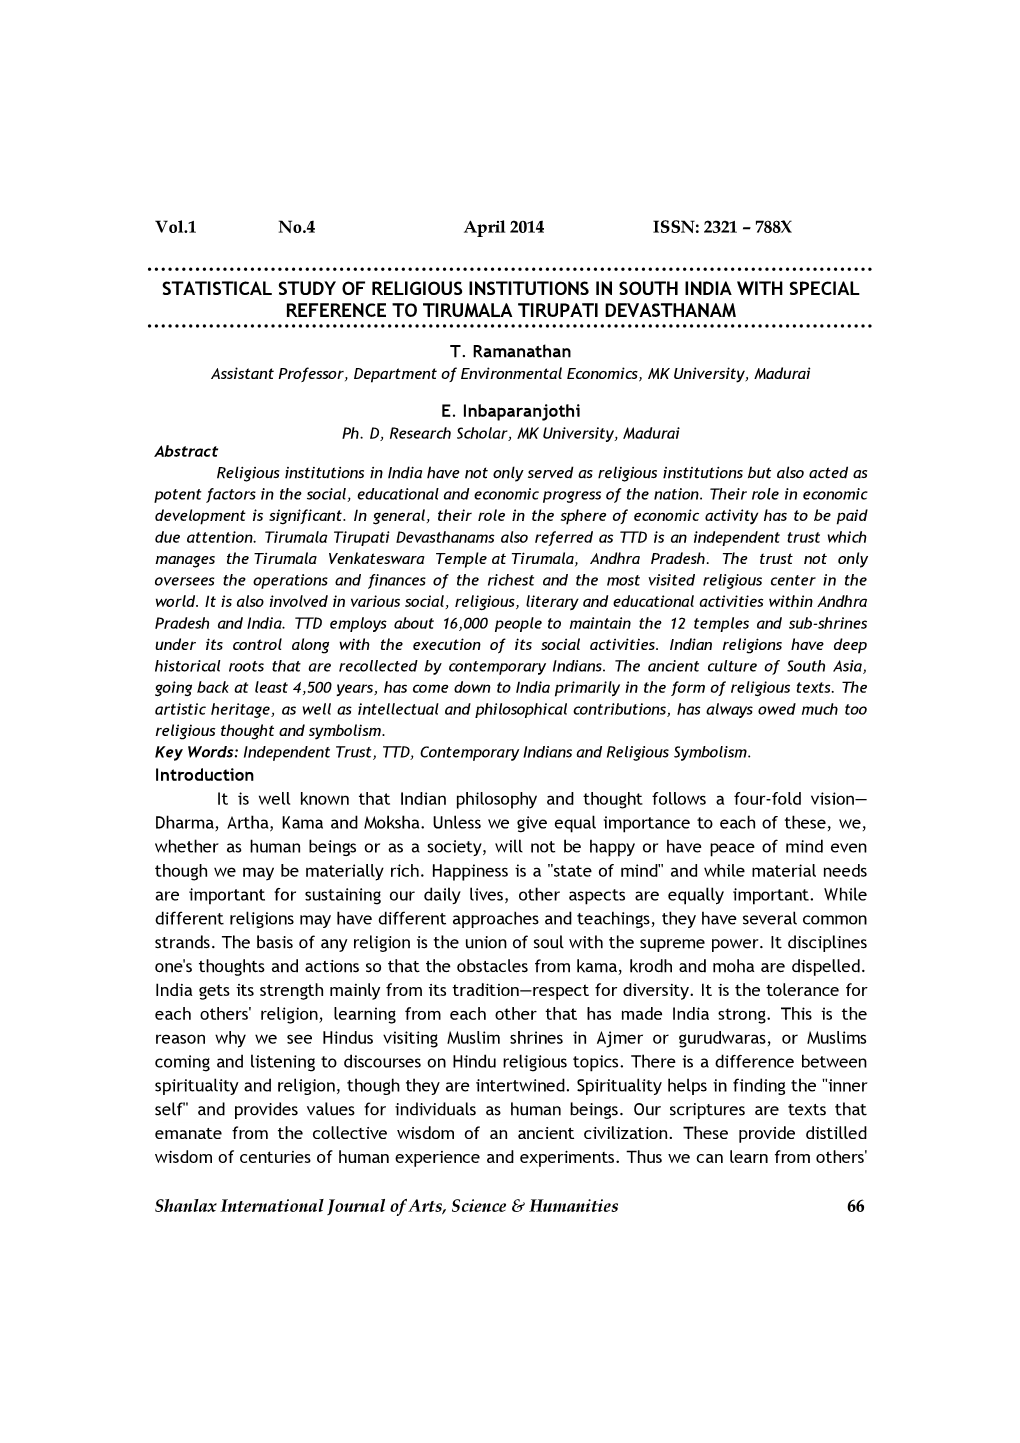 Vol.1 No.4 April 2014 ISSN: 2321 – 788X Shanlax International Journal